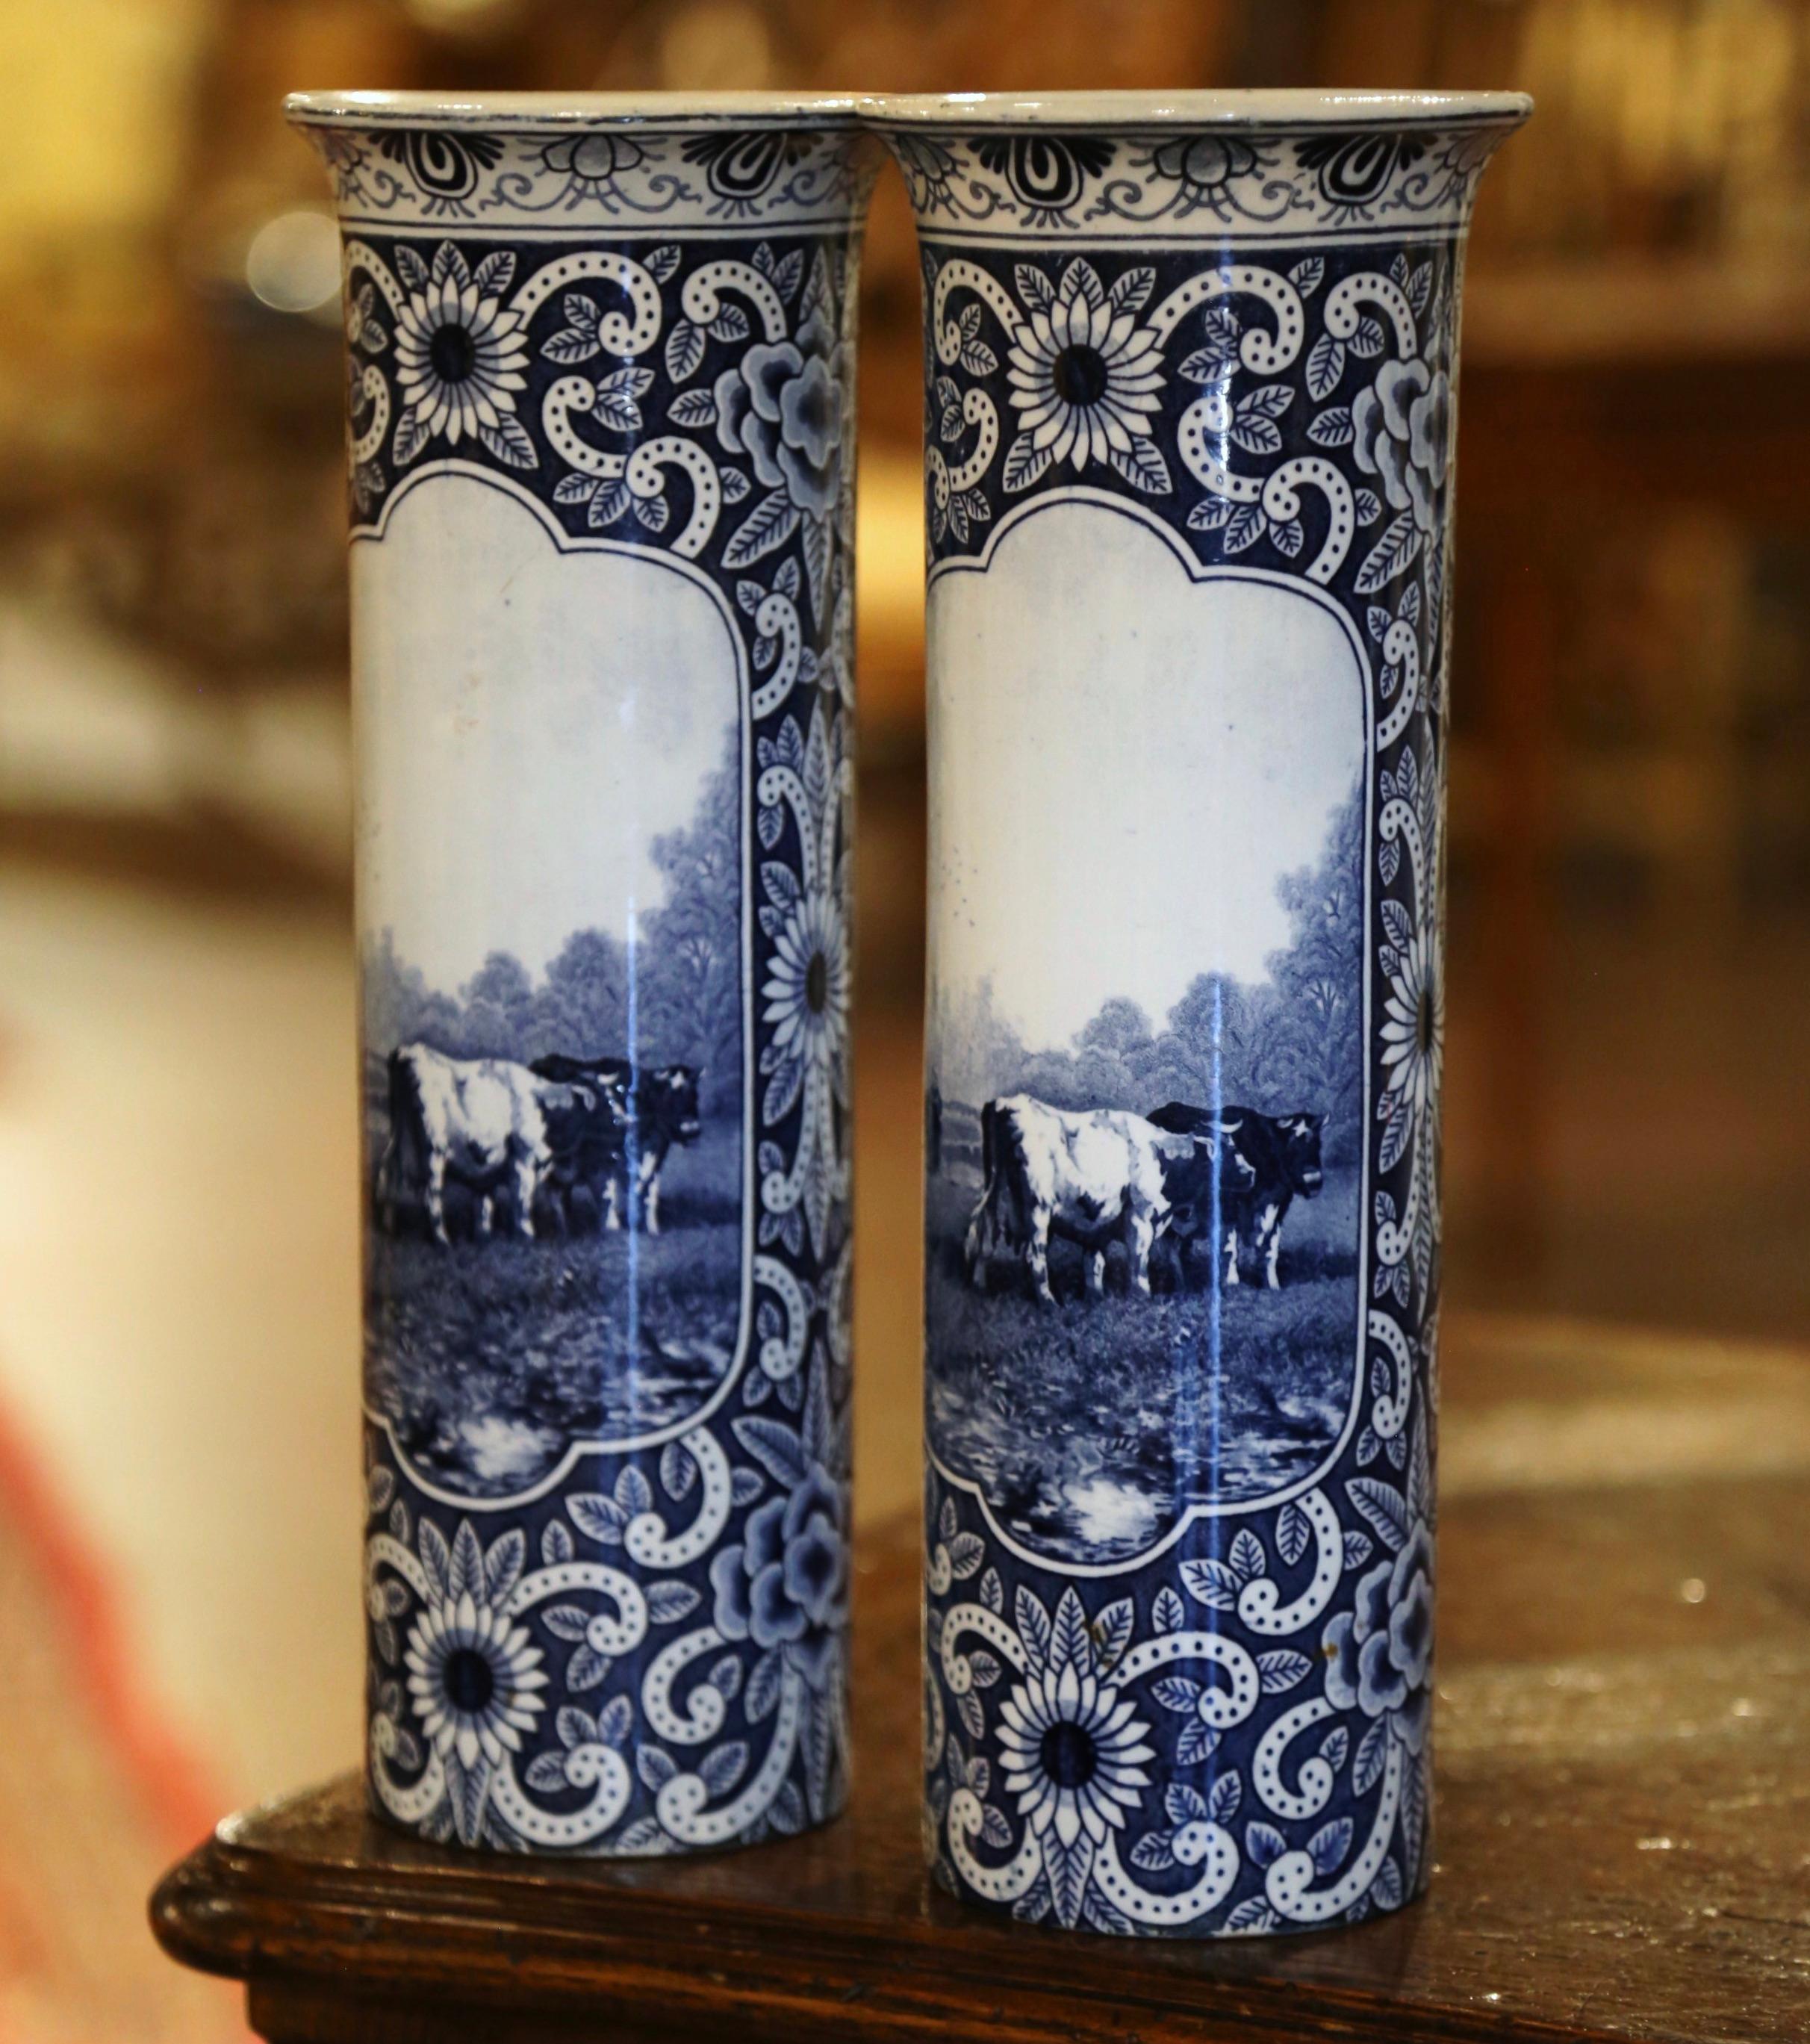 Dekorieren Sie ein Regal oder einen Konsolentisch mit diesem eleganten Paar antiker Vasen aus Delft mit Rindermotiven. Die runden Vasen wurden um 1880 in Holland hergestellt und haben eine Muschelform mit breiterem Hals. Jedes Gefäß ist in der